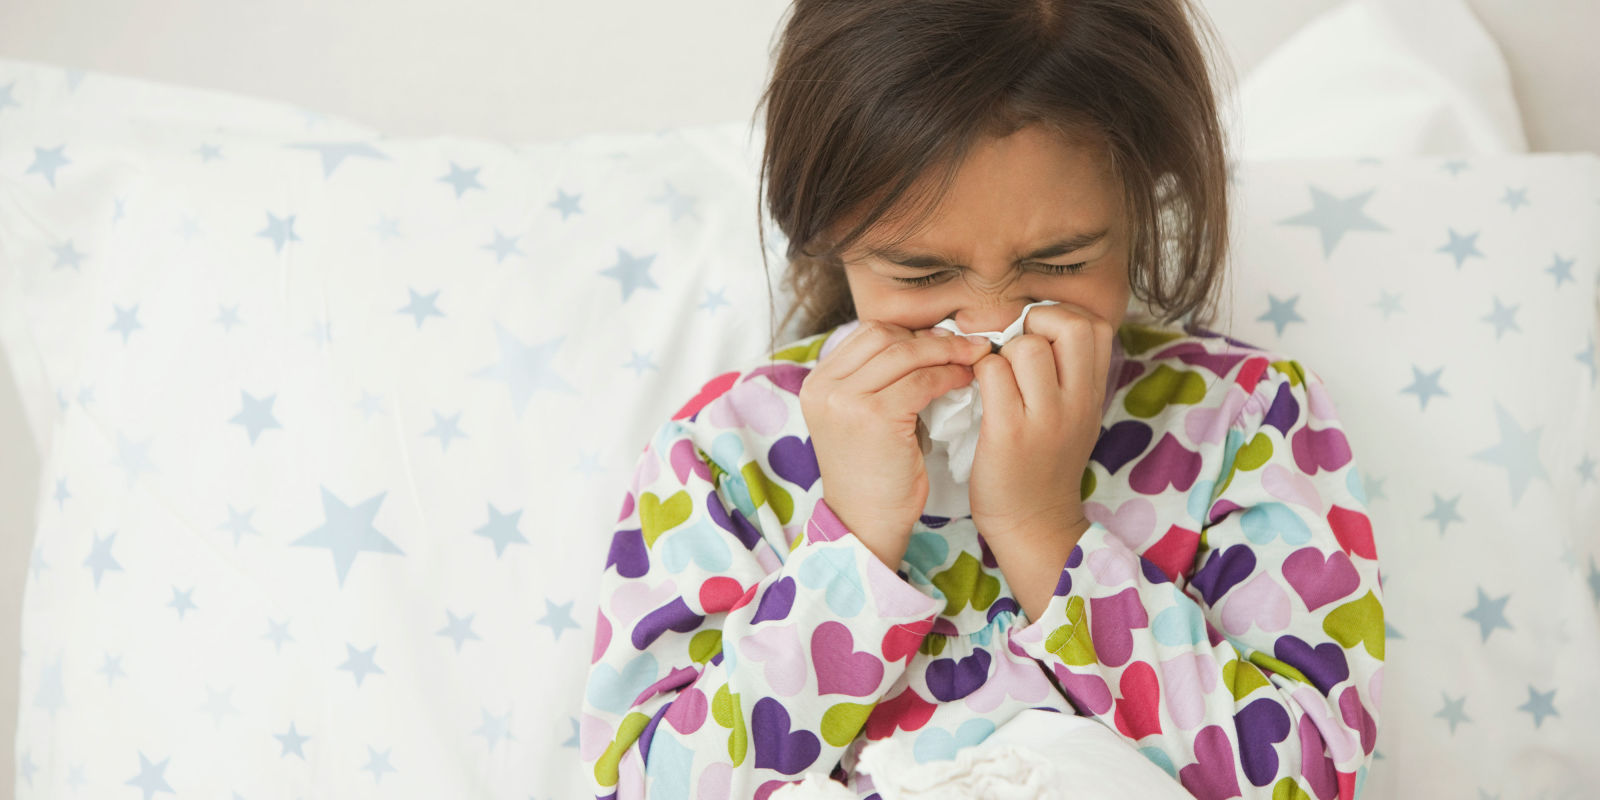 Siro trị cảm cúm cho trẻ em childrens cold and flu relief của mỹ chai 30ml